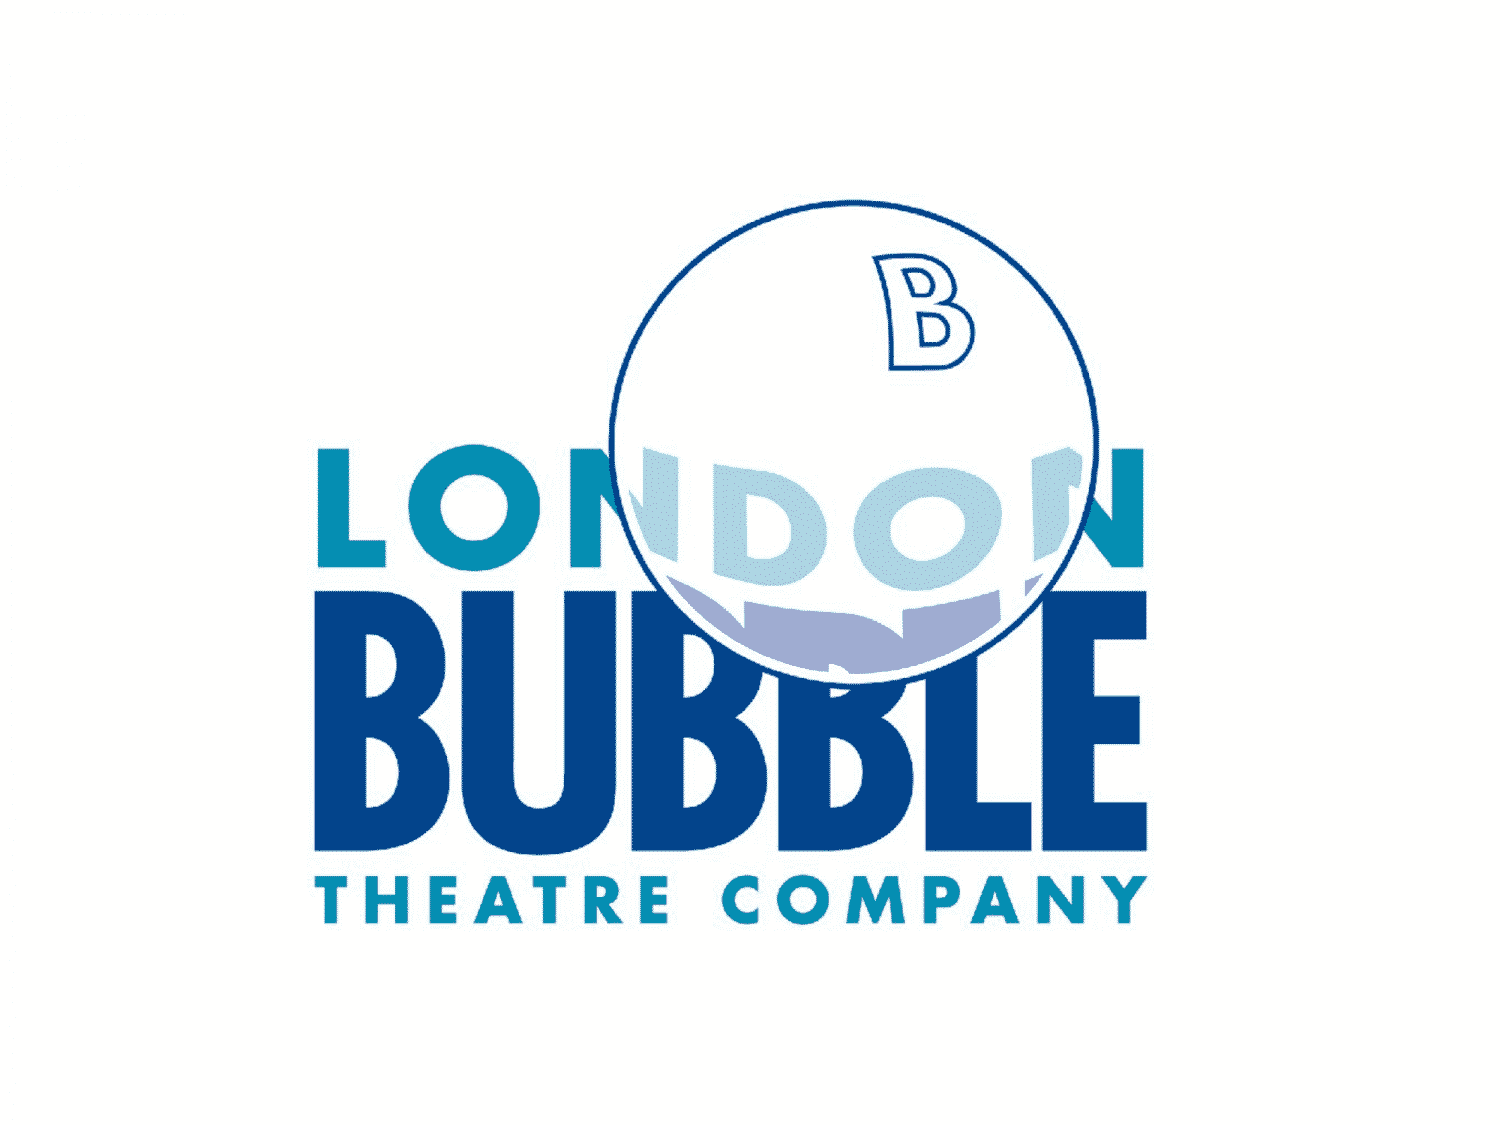 London Bubble Theatre Company supports WYO